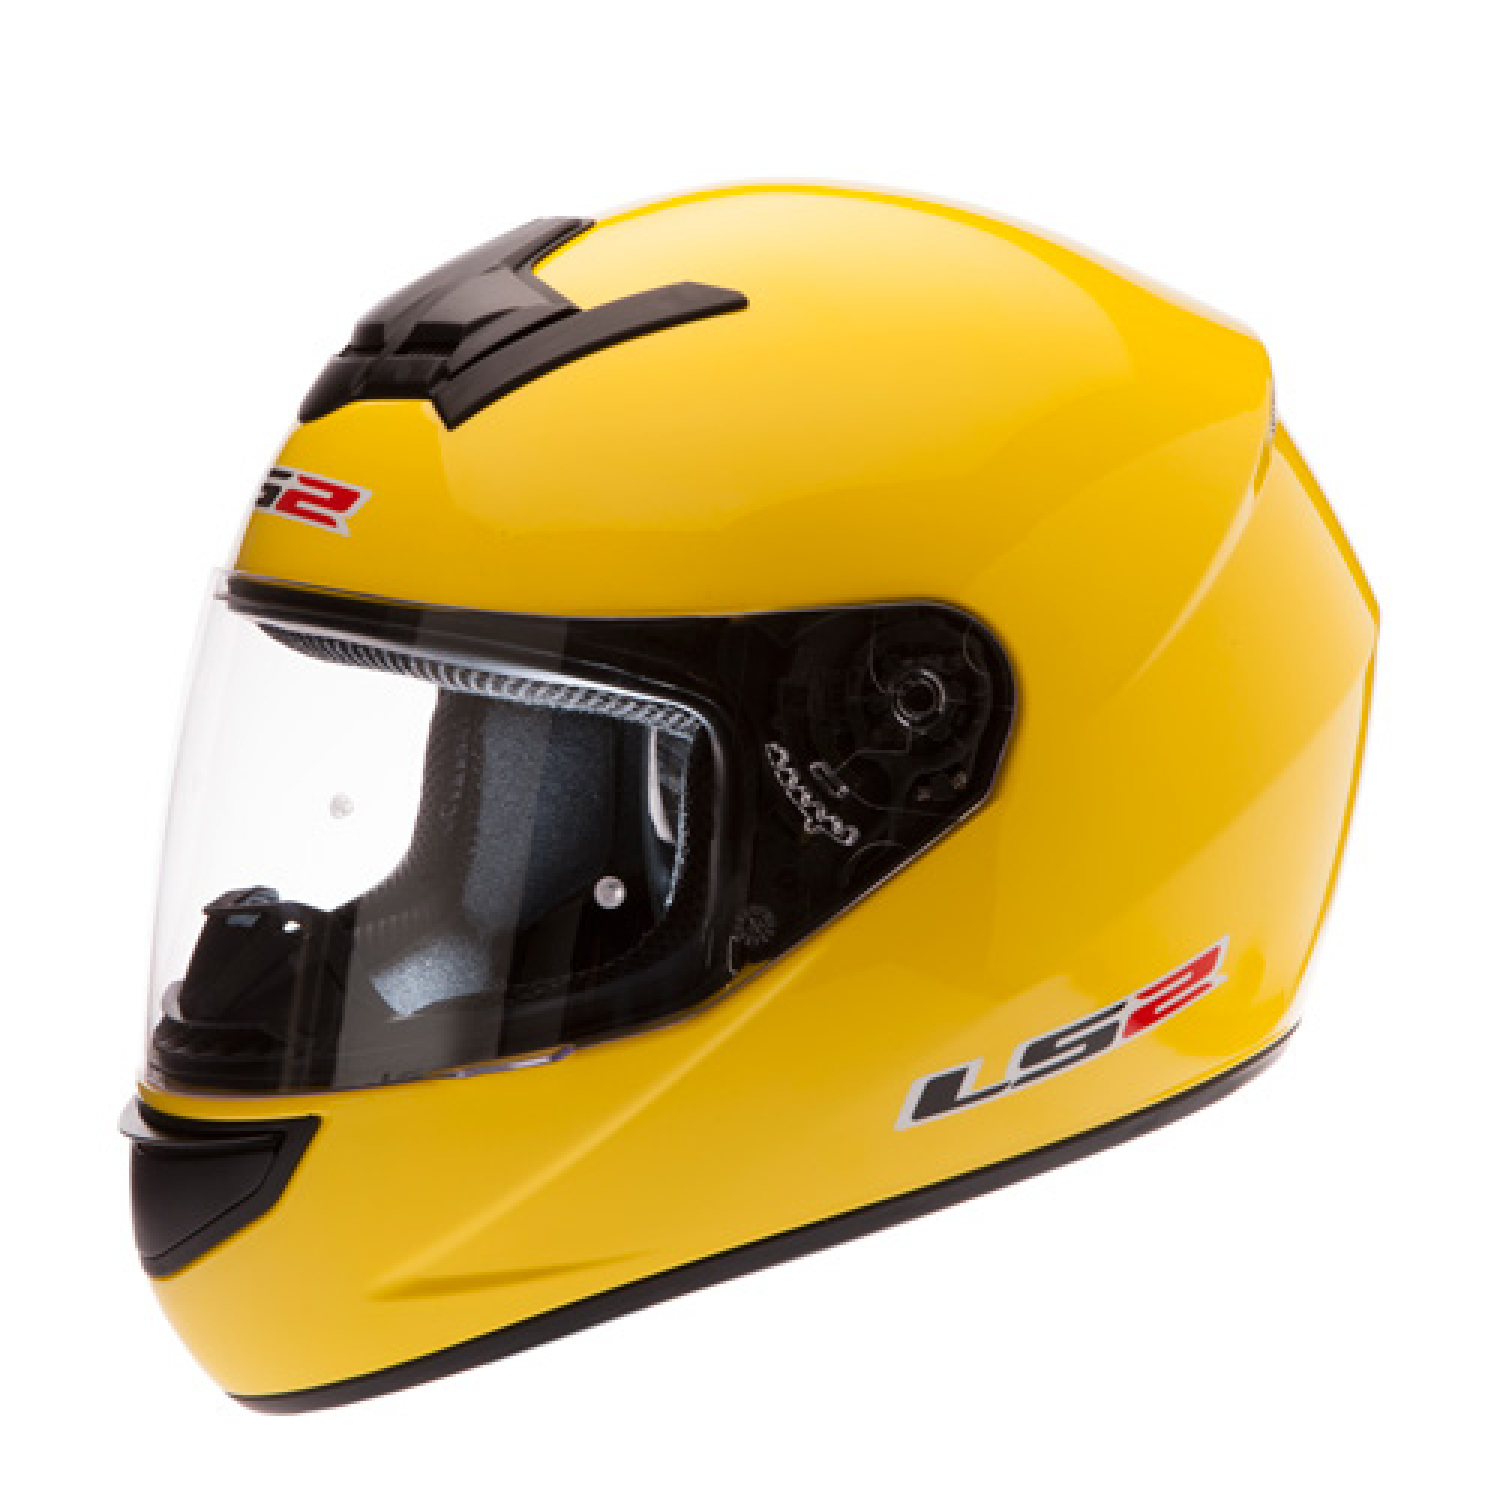 Helm LS2 gelb